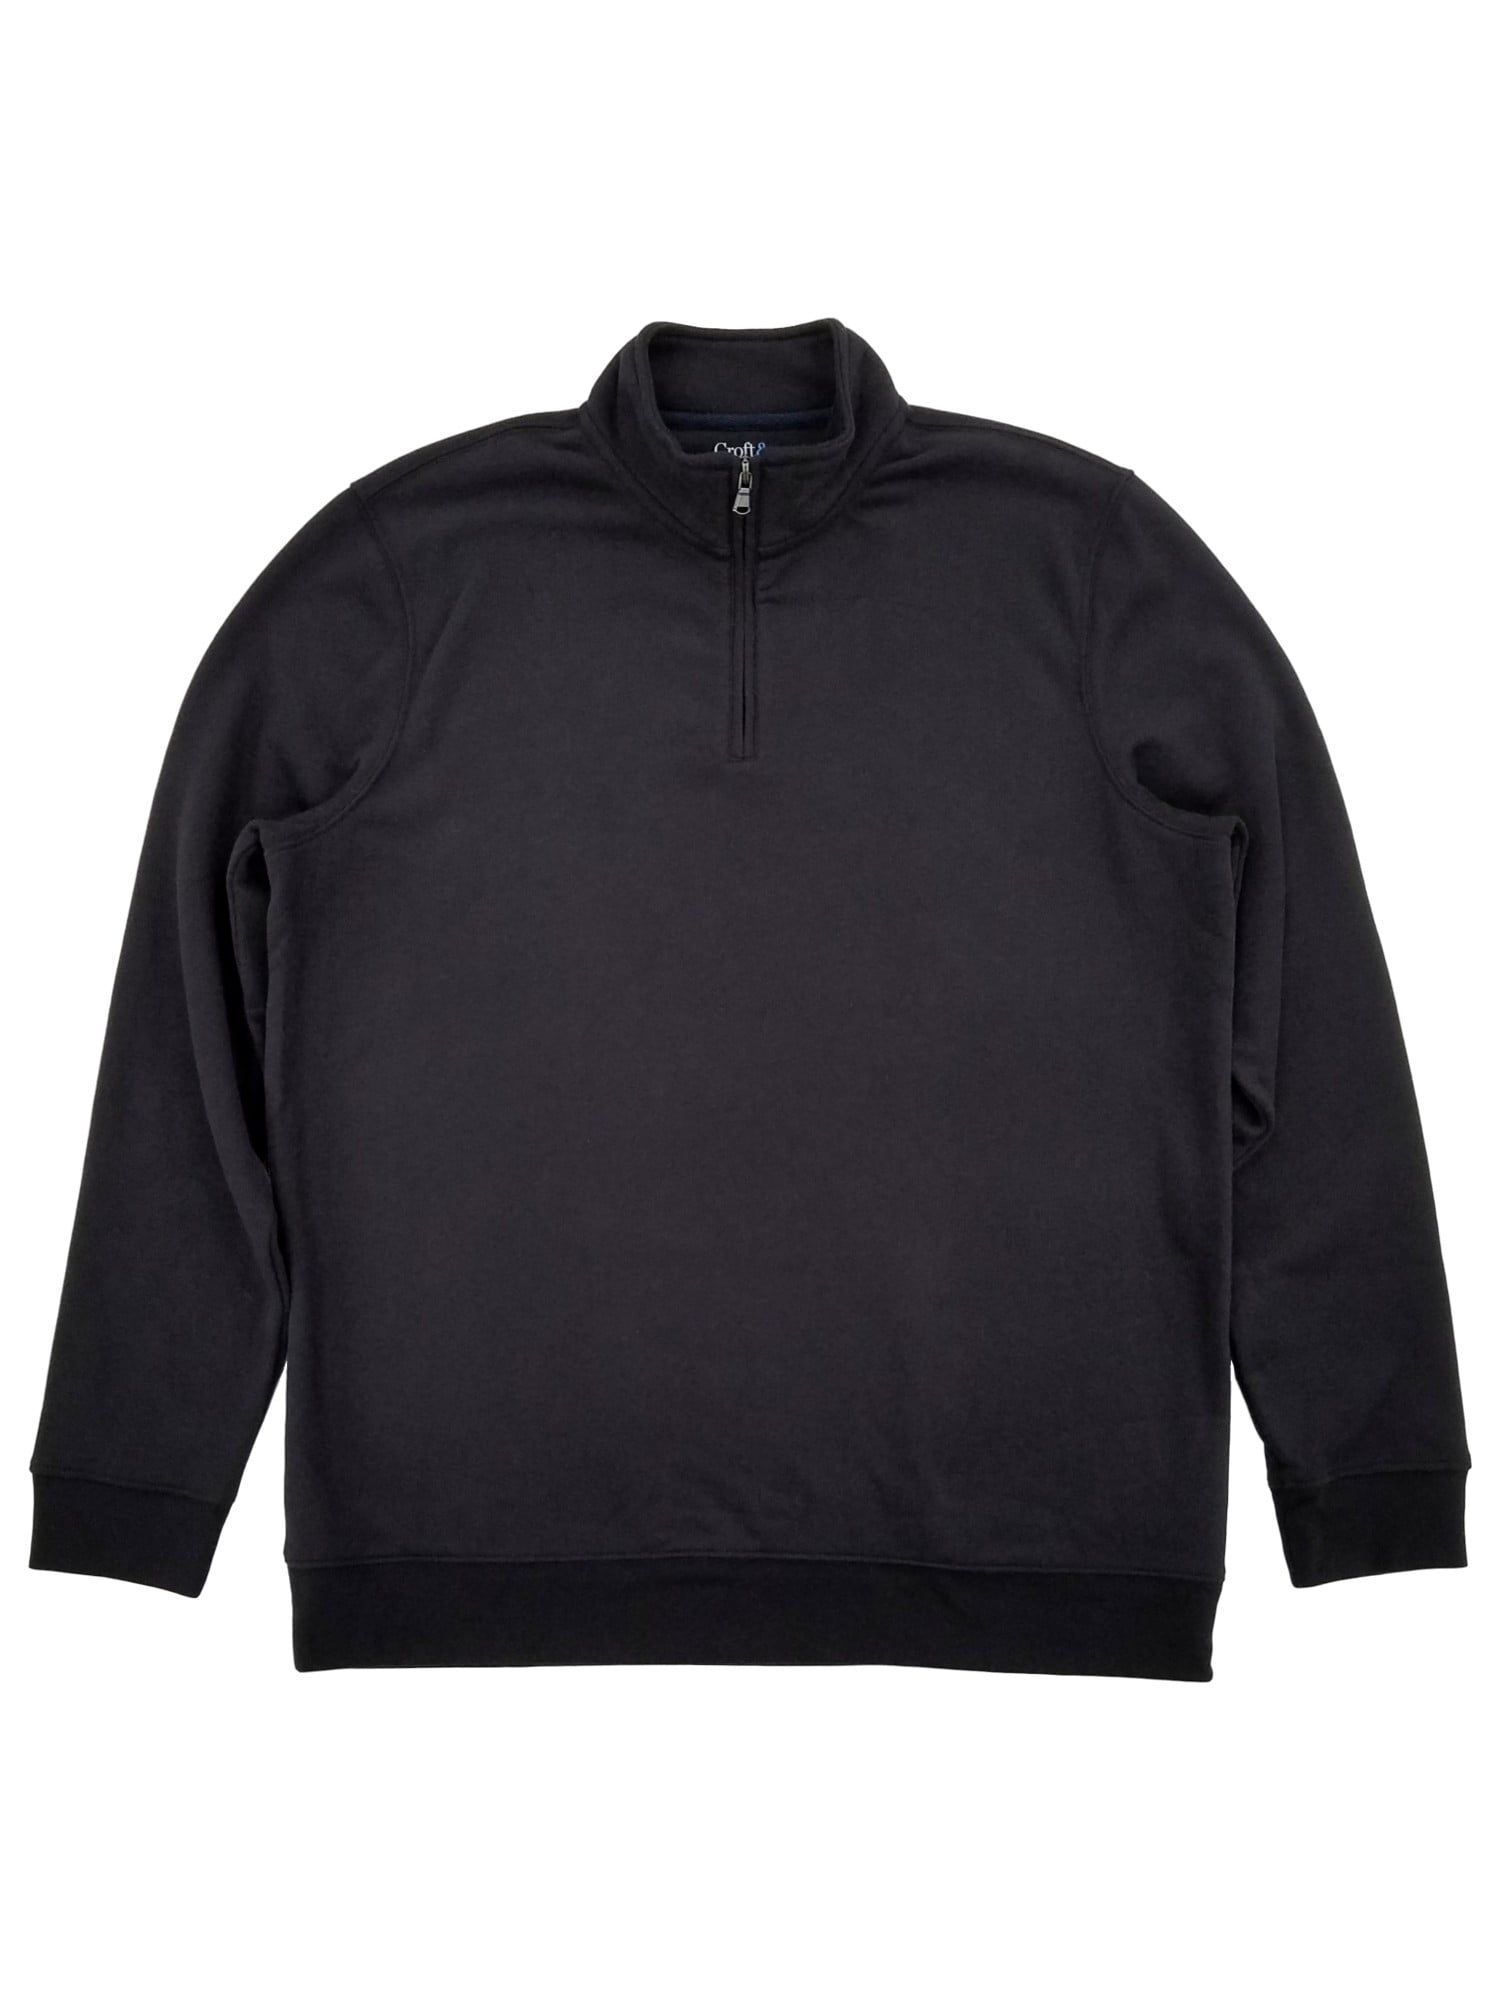 Croft & Barrow - Mens Black Fleece Quarter-Zip Pullover Sweatshirt ...